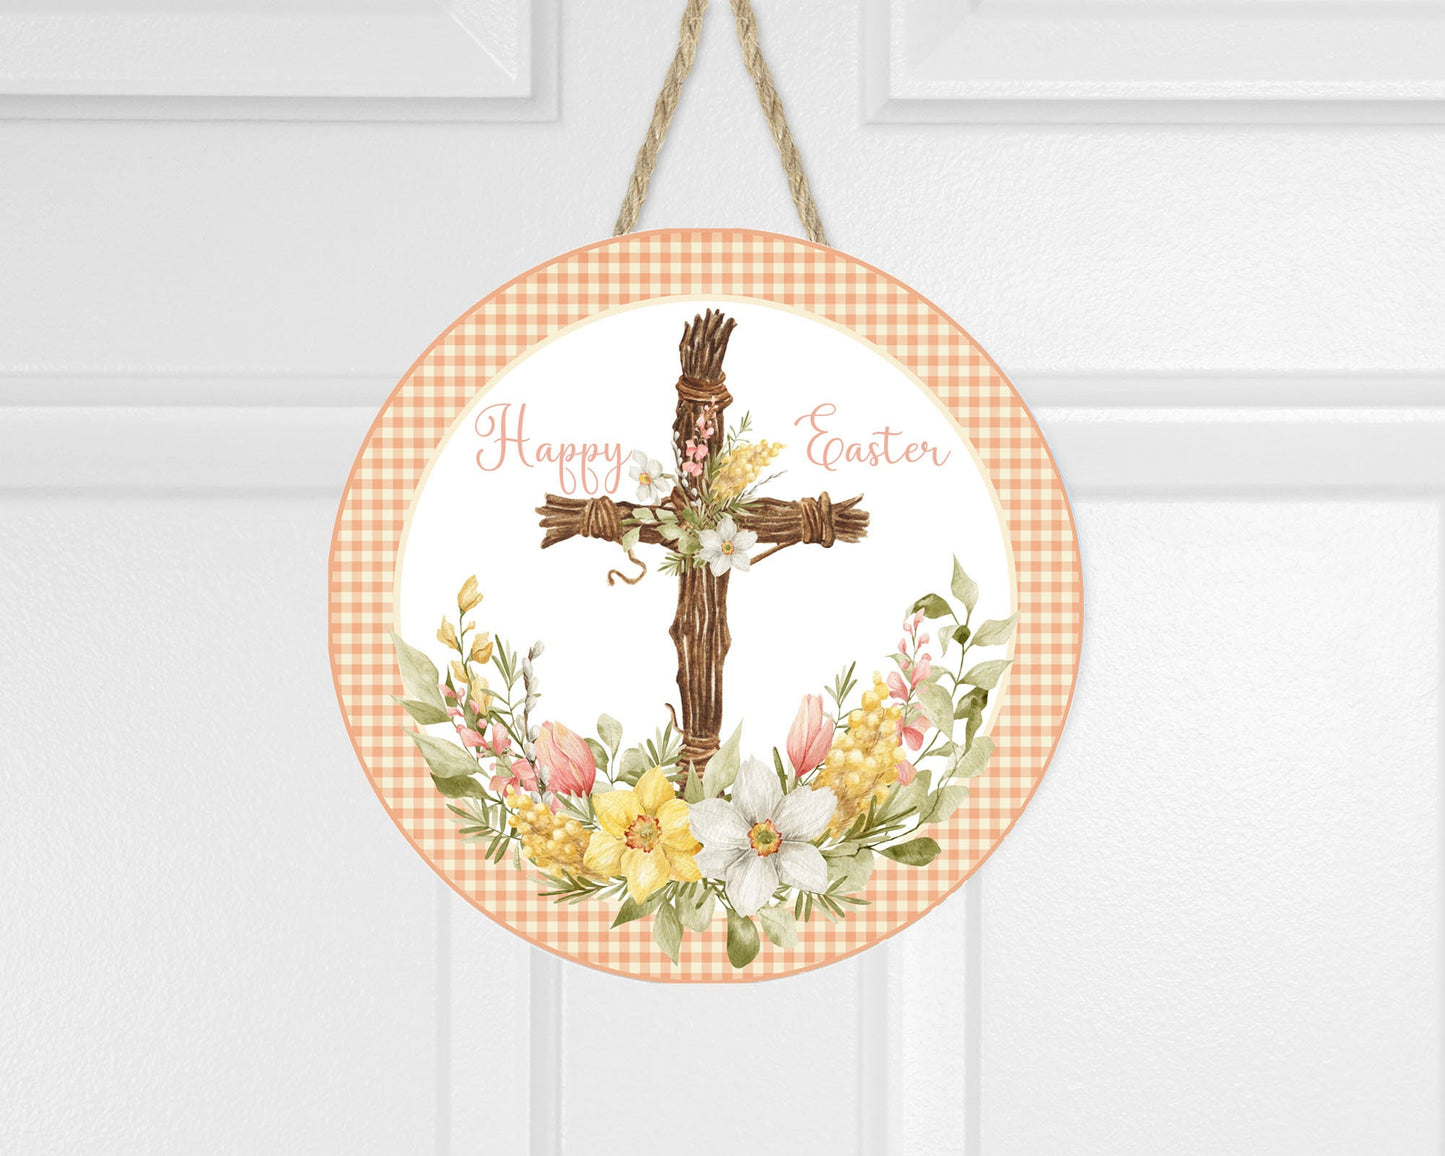 Happy Easter Cross Round Printed Handmade Wood Sign Door Hanger